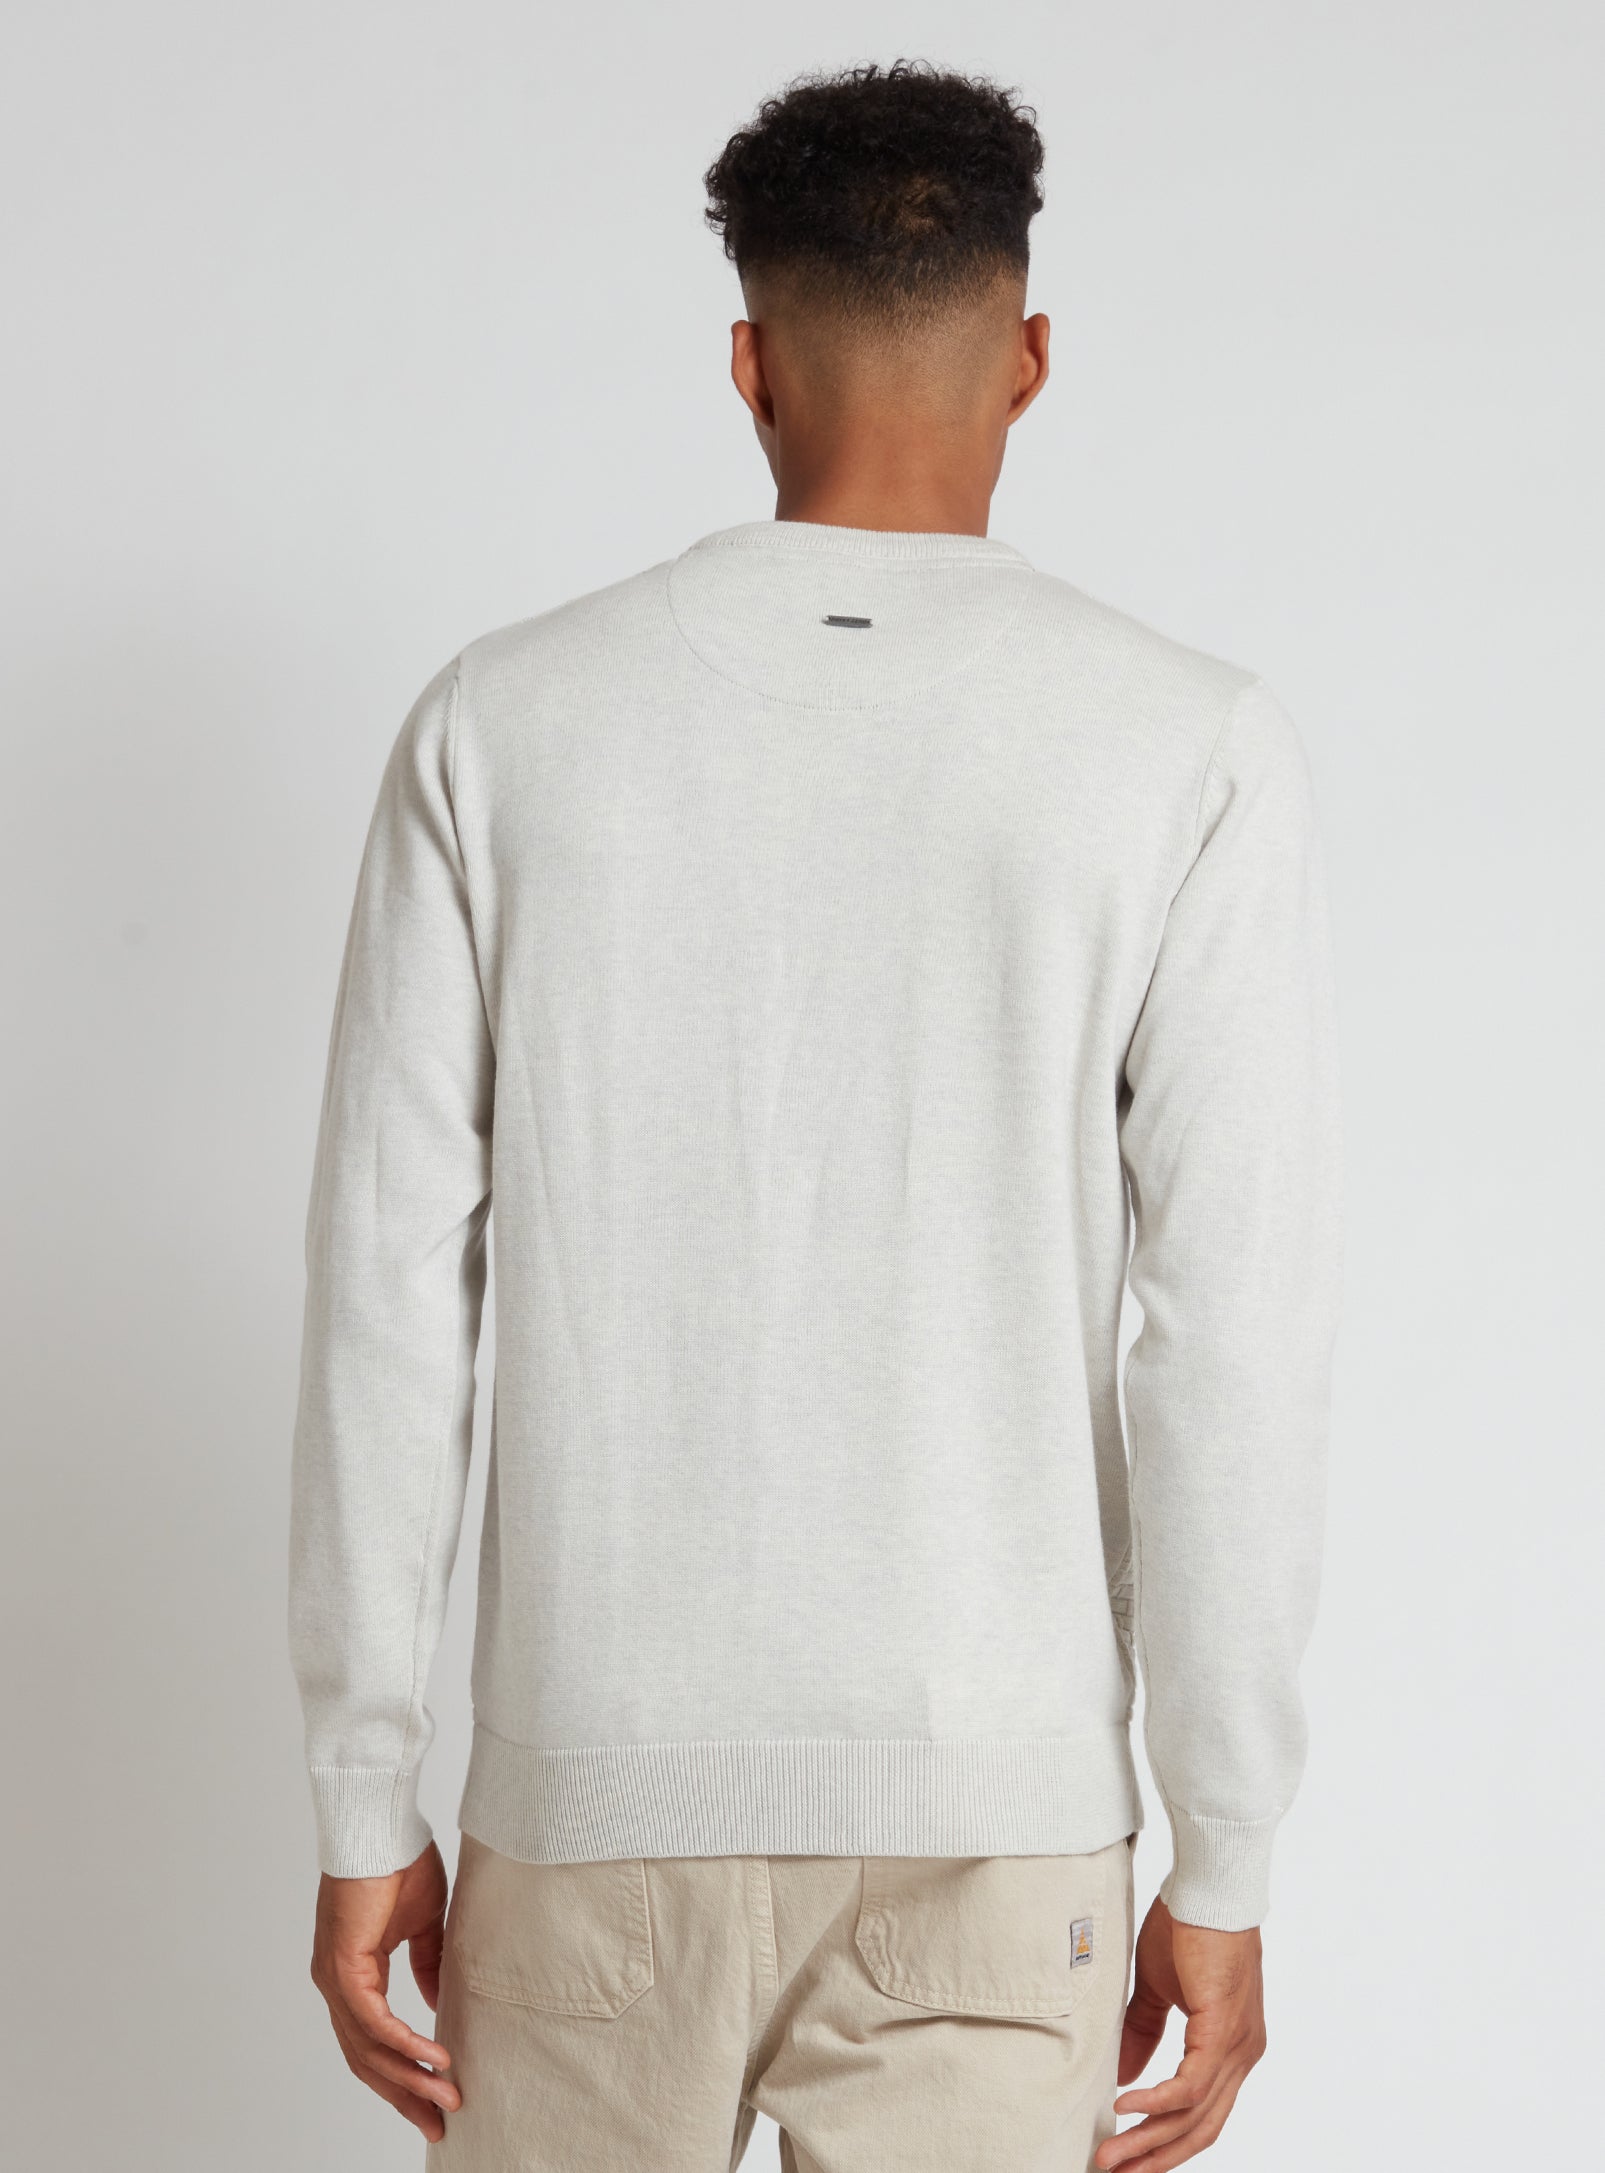 SWEN | Cotton crewneck fine gauge sweater